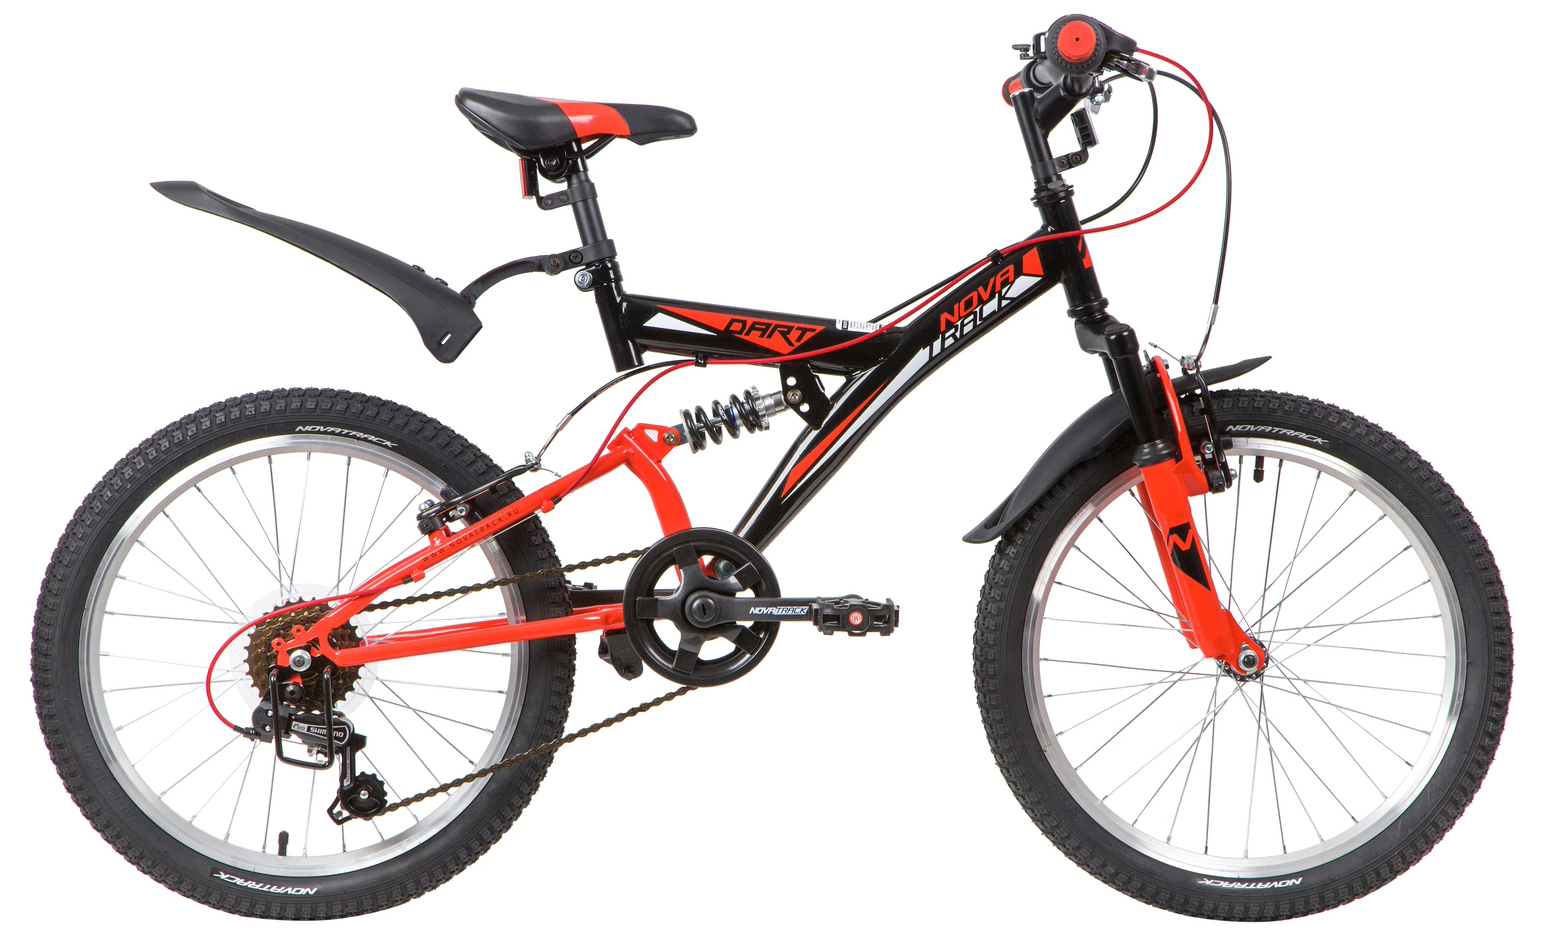  Отзывы о Детском велосипеде Novatrack Dart 20 2020